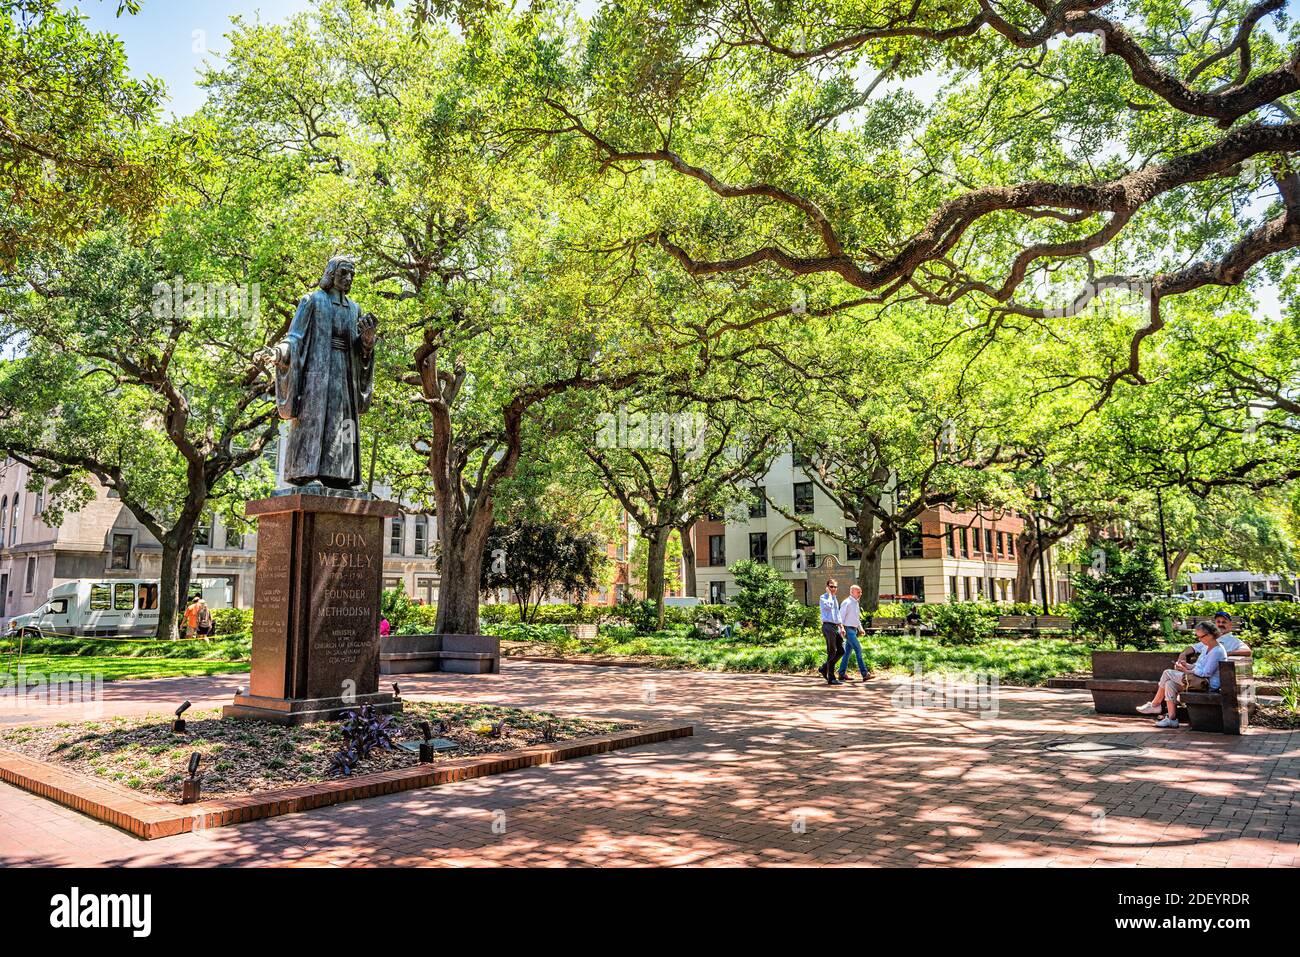 Savannah, Etats-Unis - 11 mai 2018: Reynolds Park avec des gens en Géorgie pendant la journée ensoleillée en été avec rue et statue de John Wesley dans le centre de la place Banque D'Images